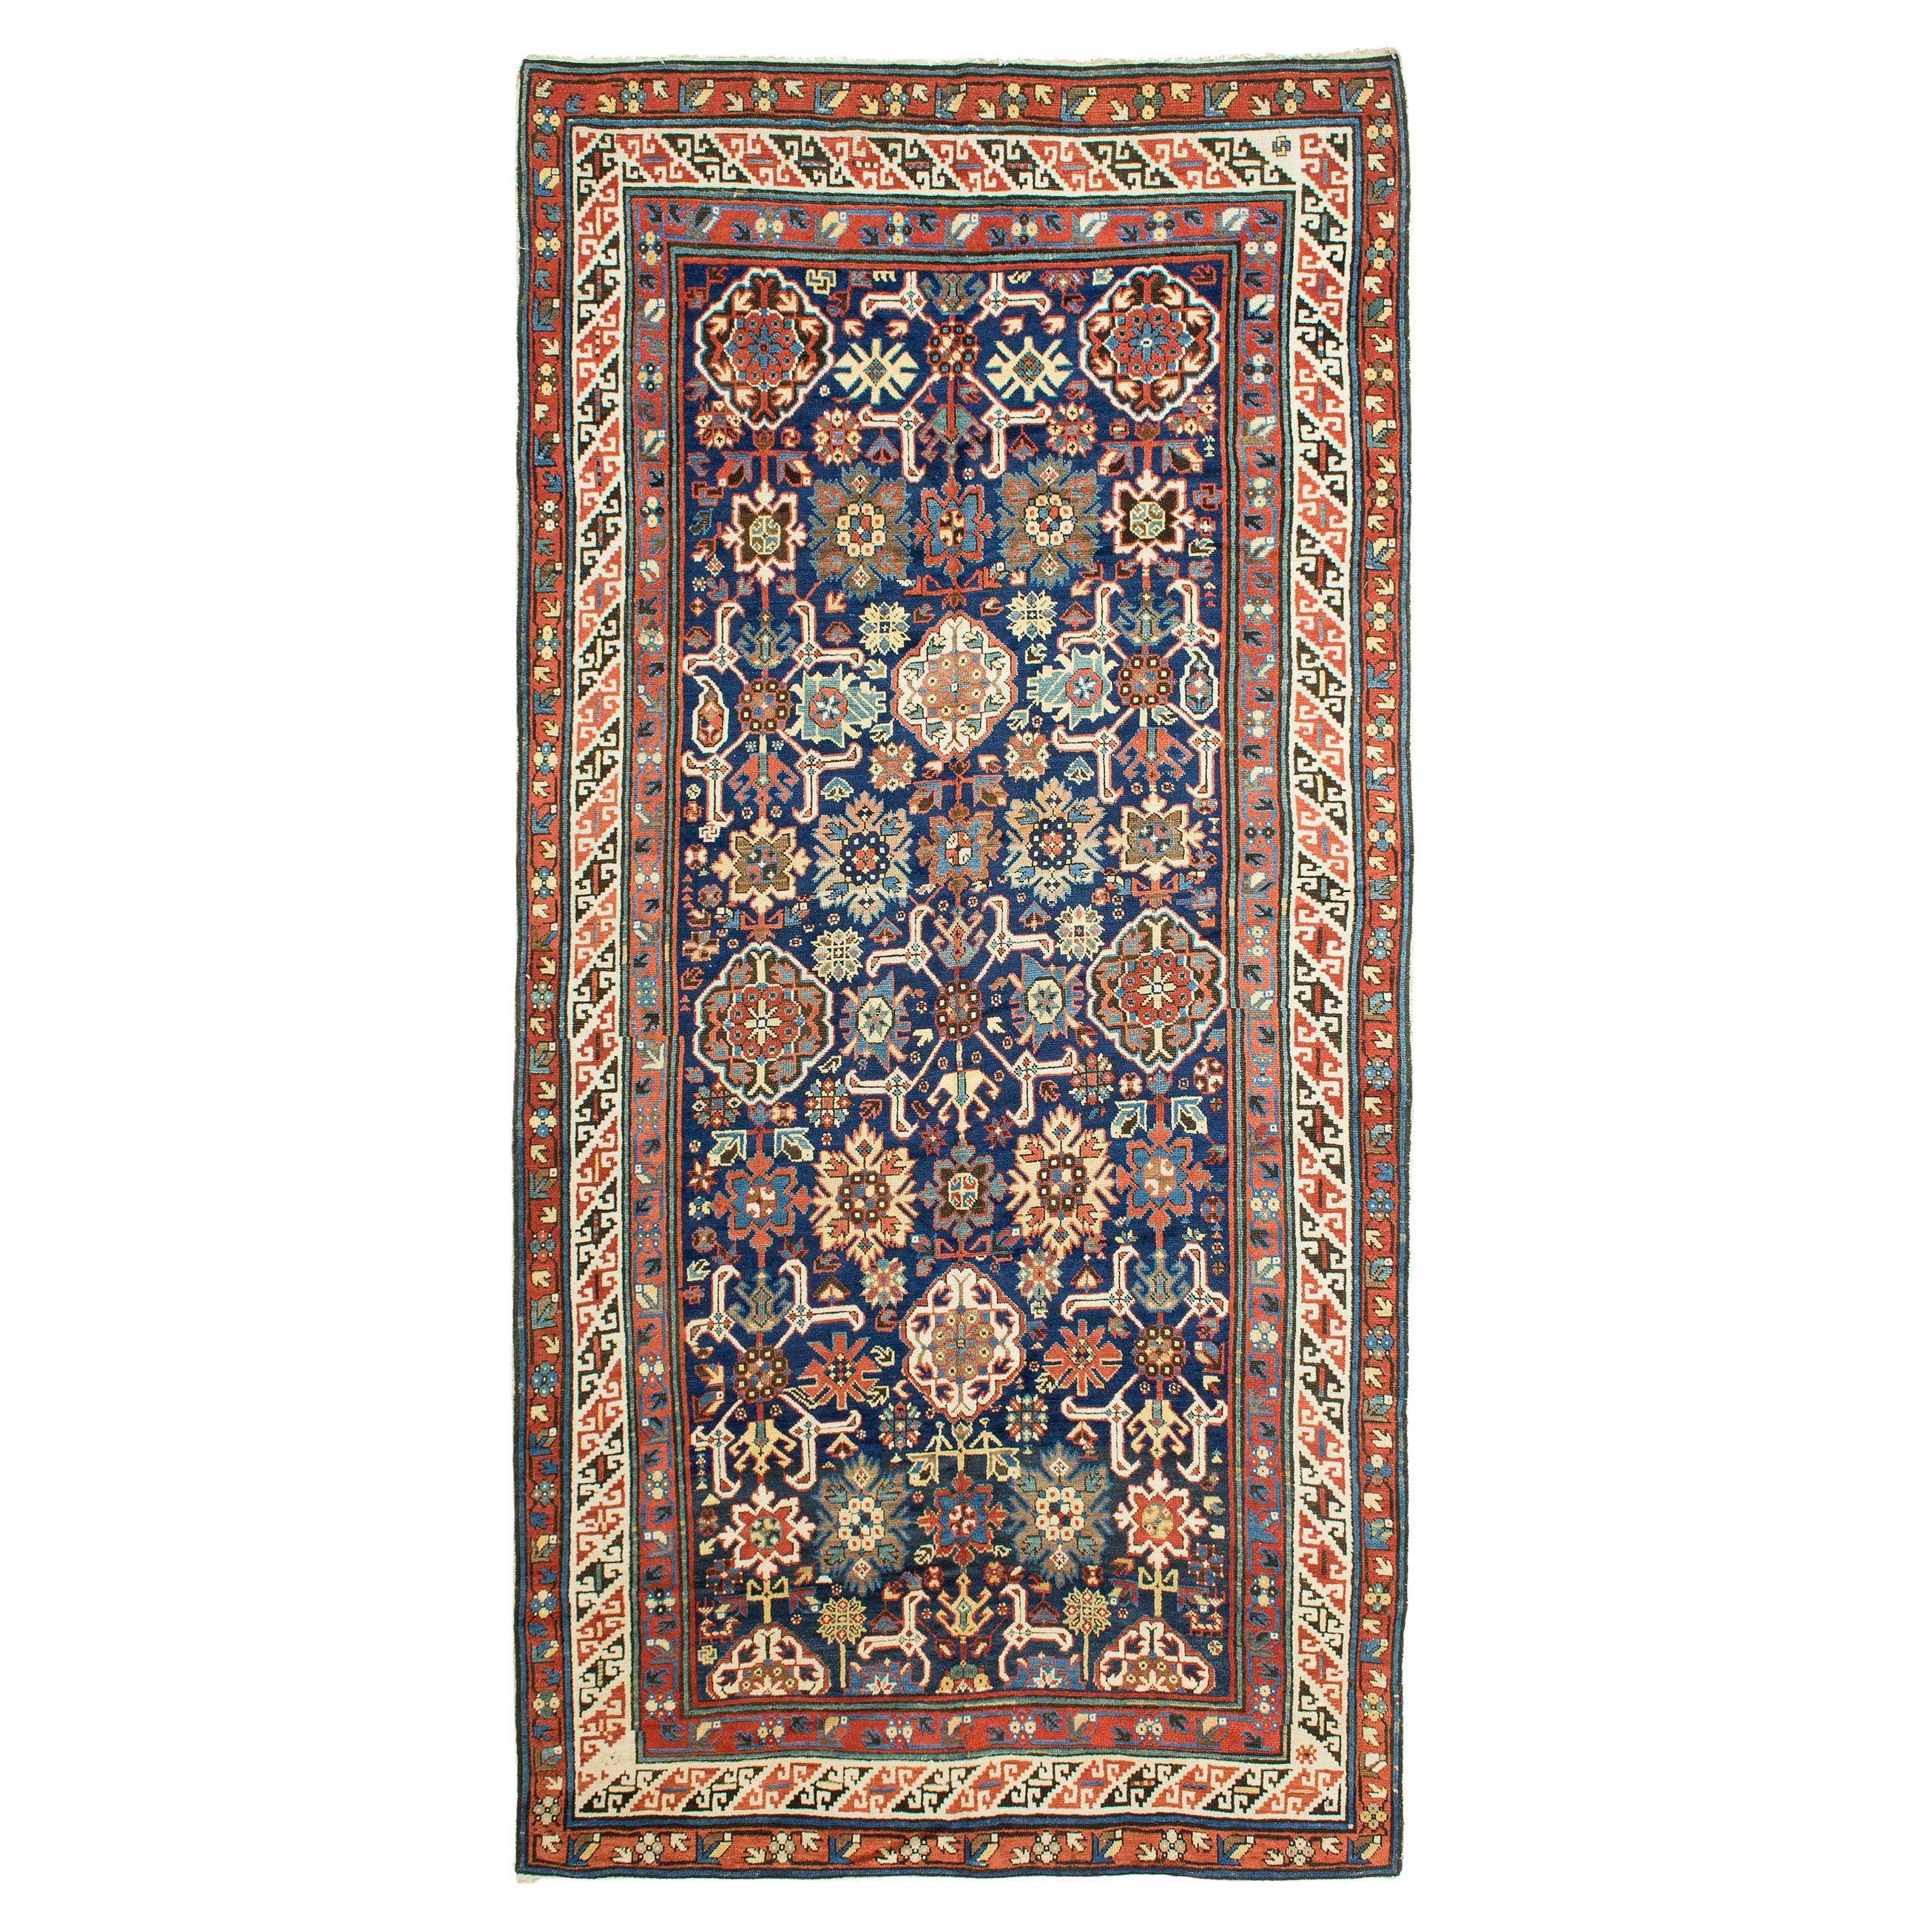 Antique Caucasian Derbend Carpet